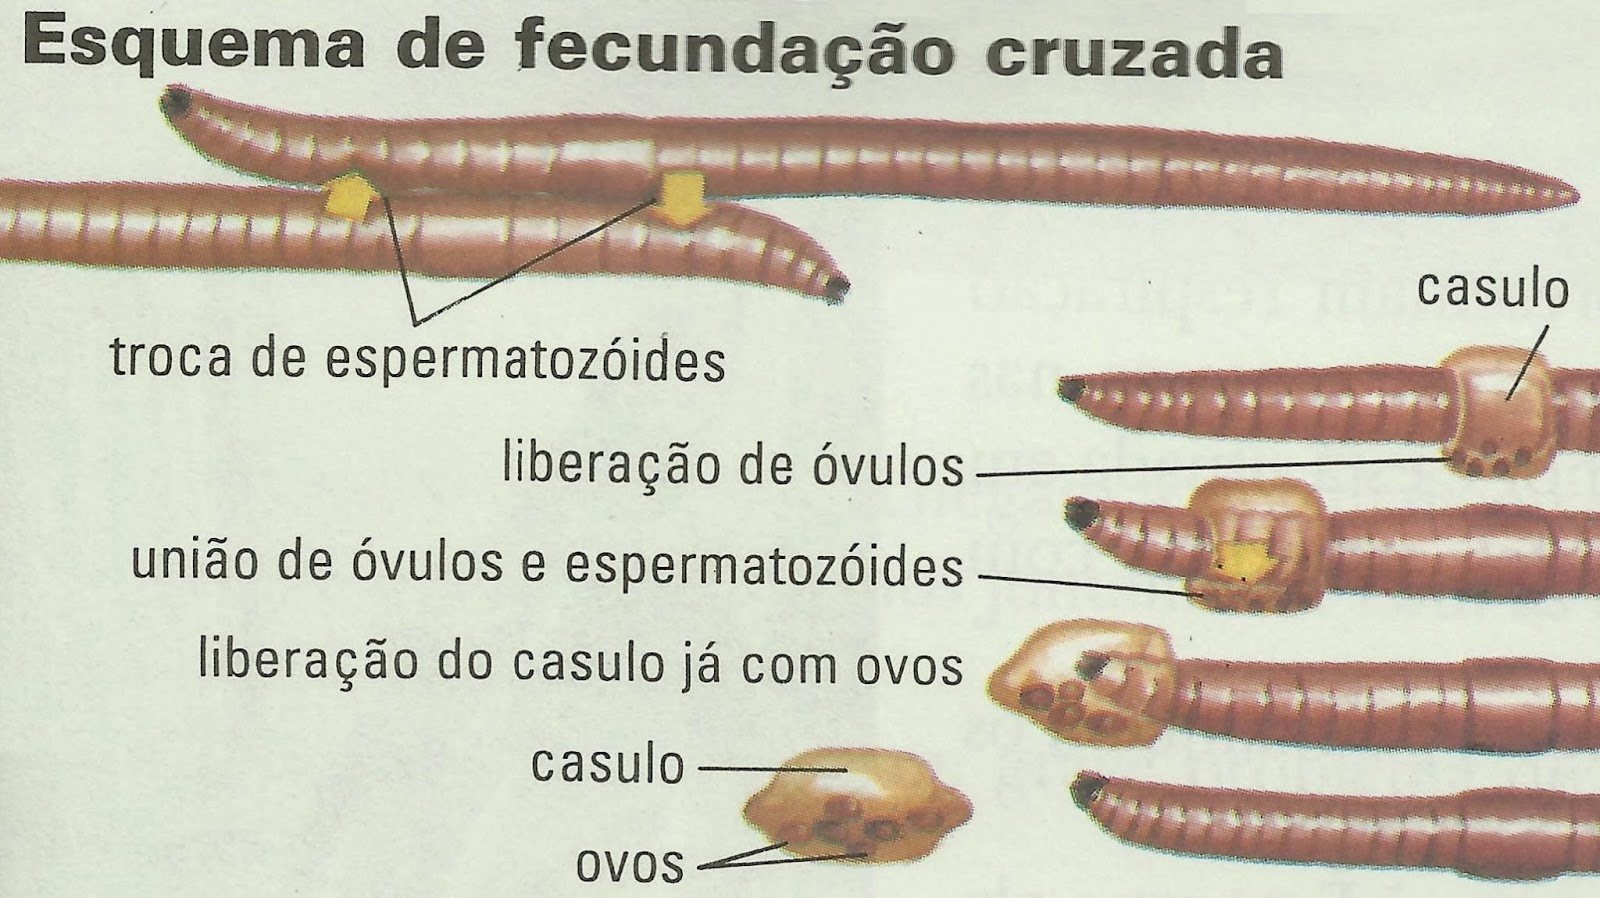 Гермафродитами являются черви